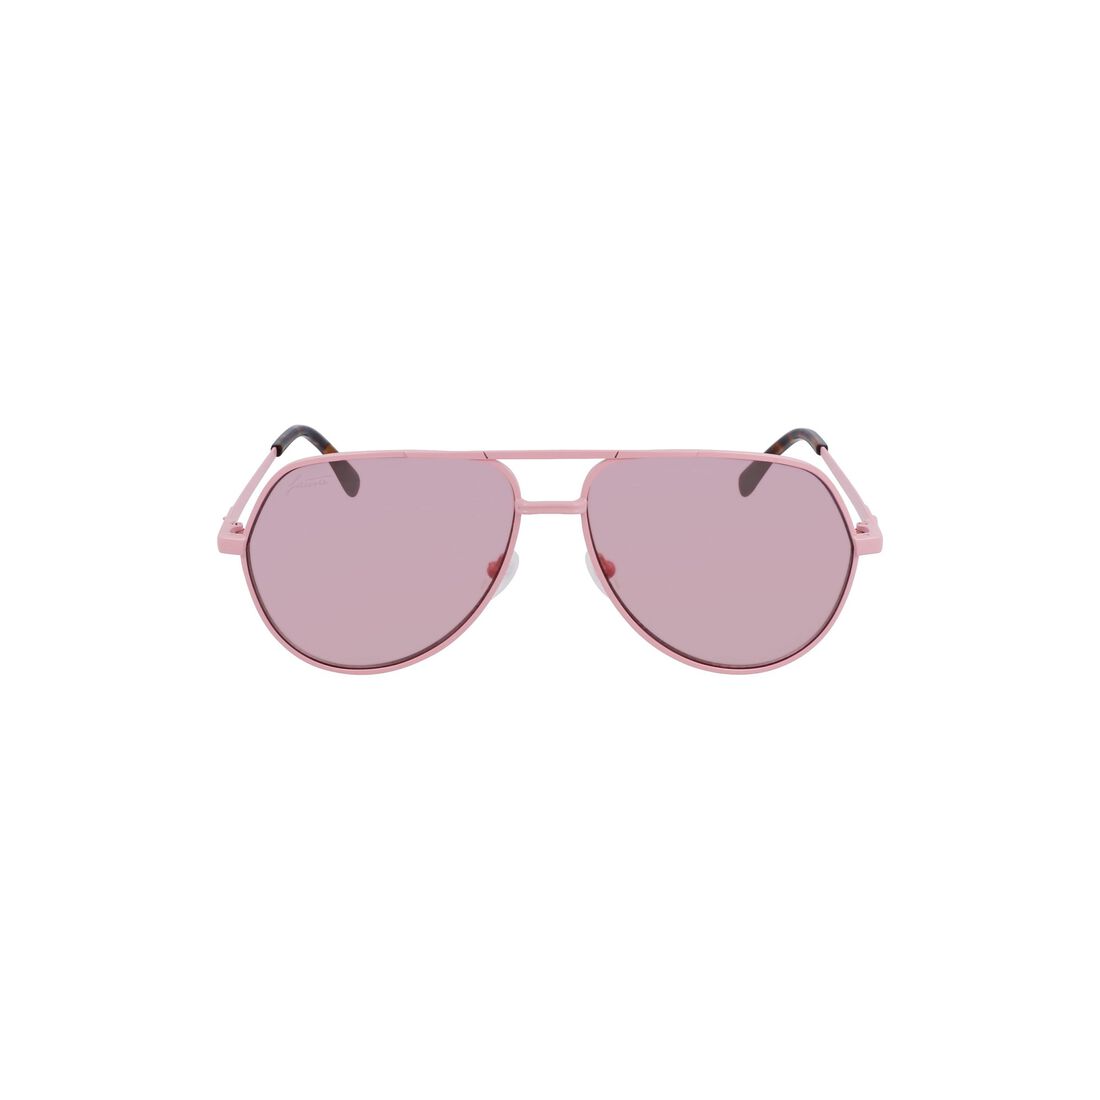 نظارات شمسية بايلوت ميتال بتوقيع الماركة 101 للجنسين